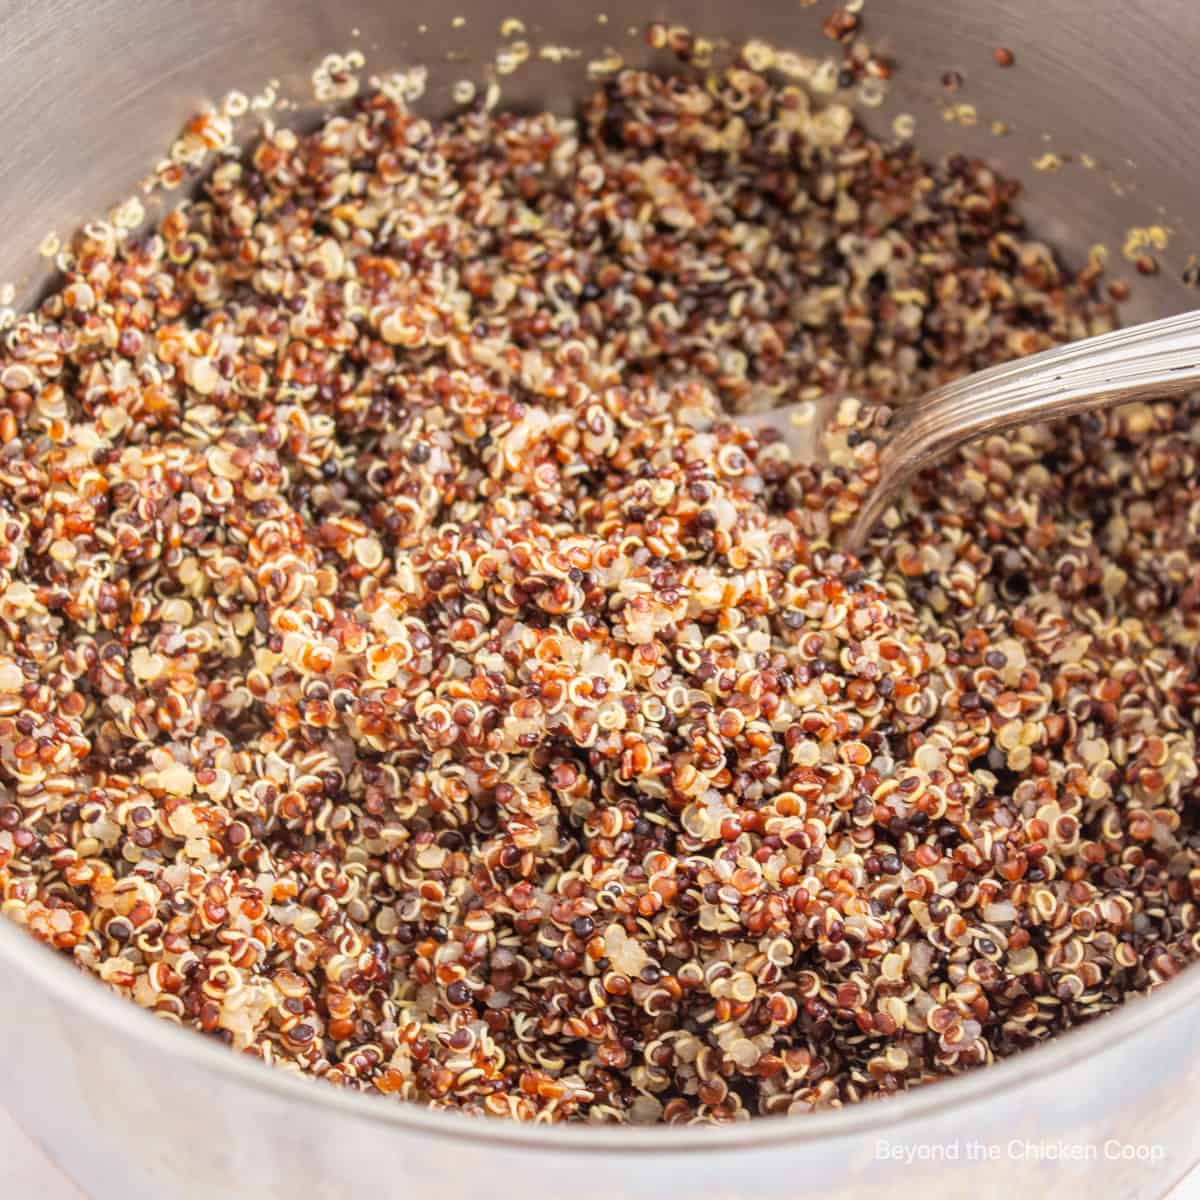 Tricolored quinoa in a pot.